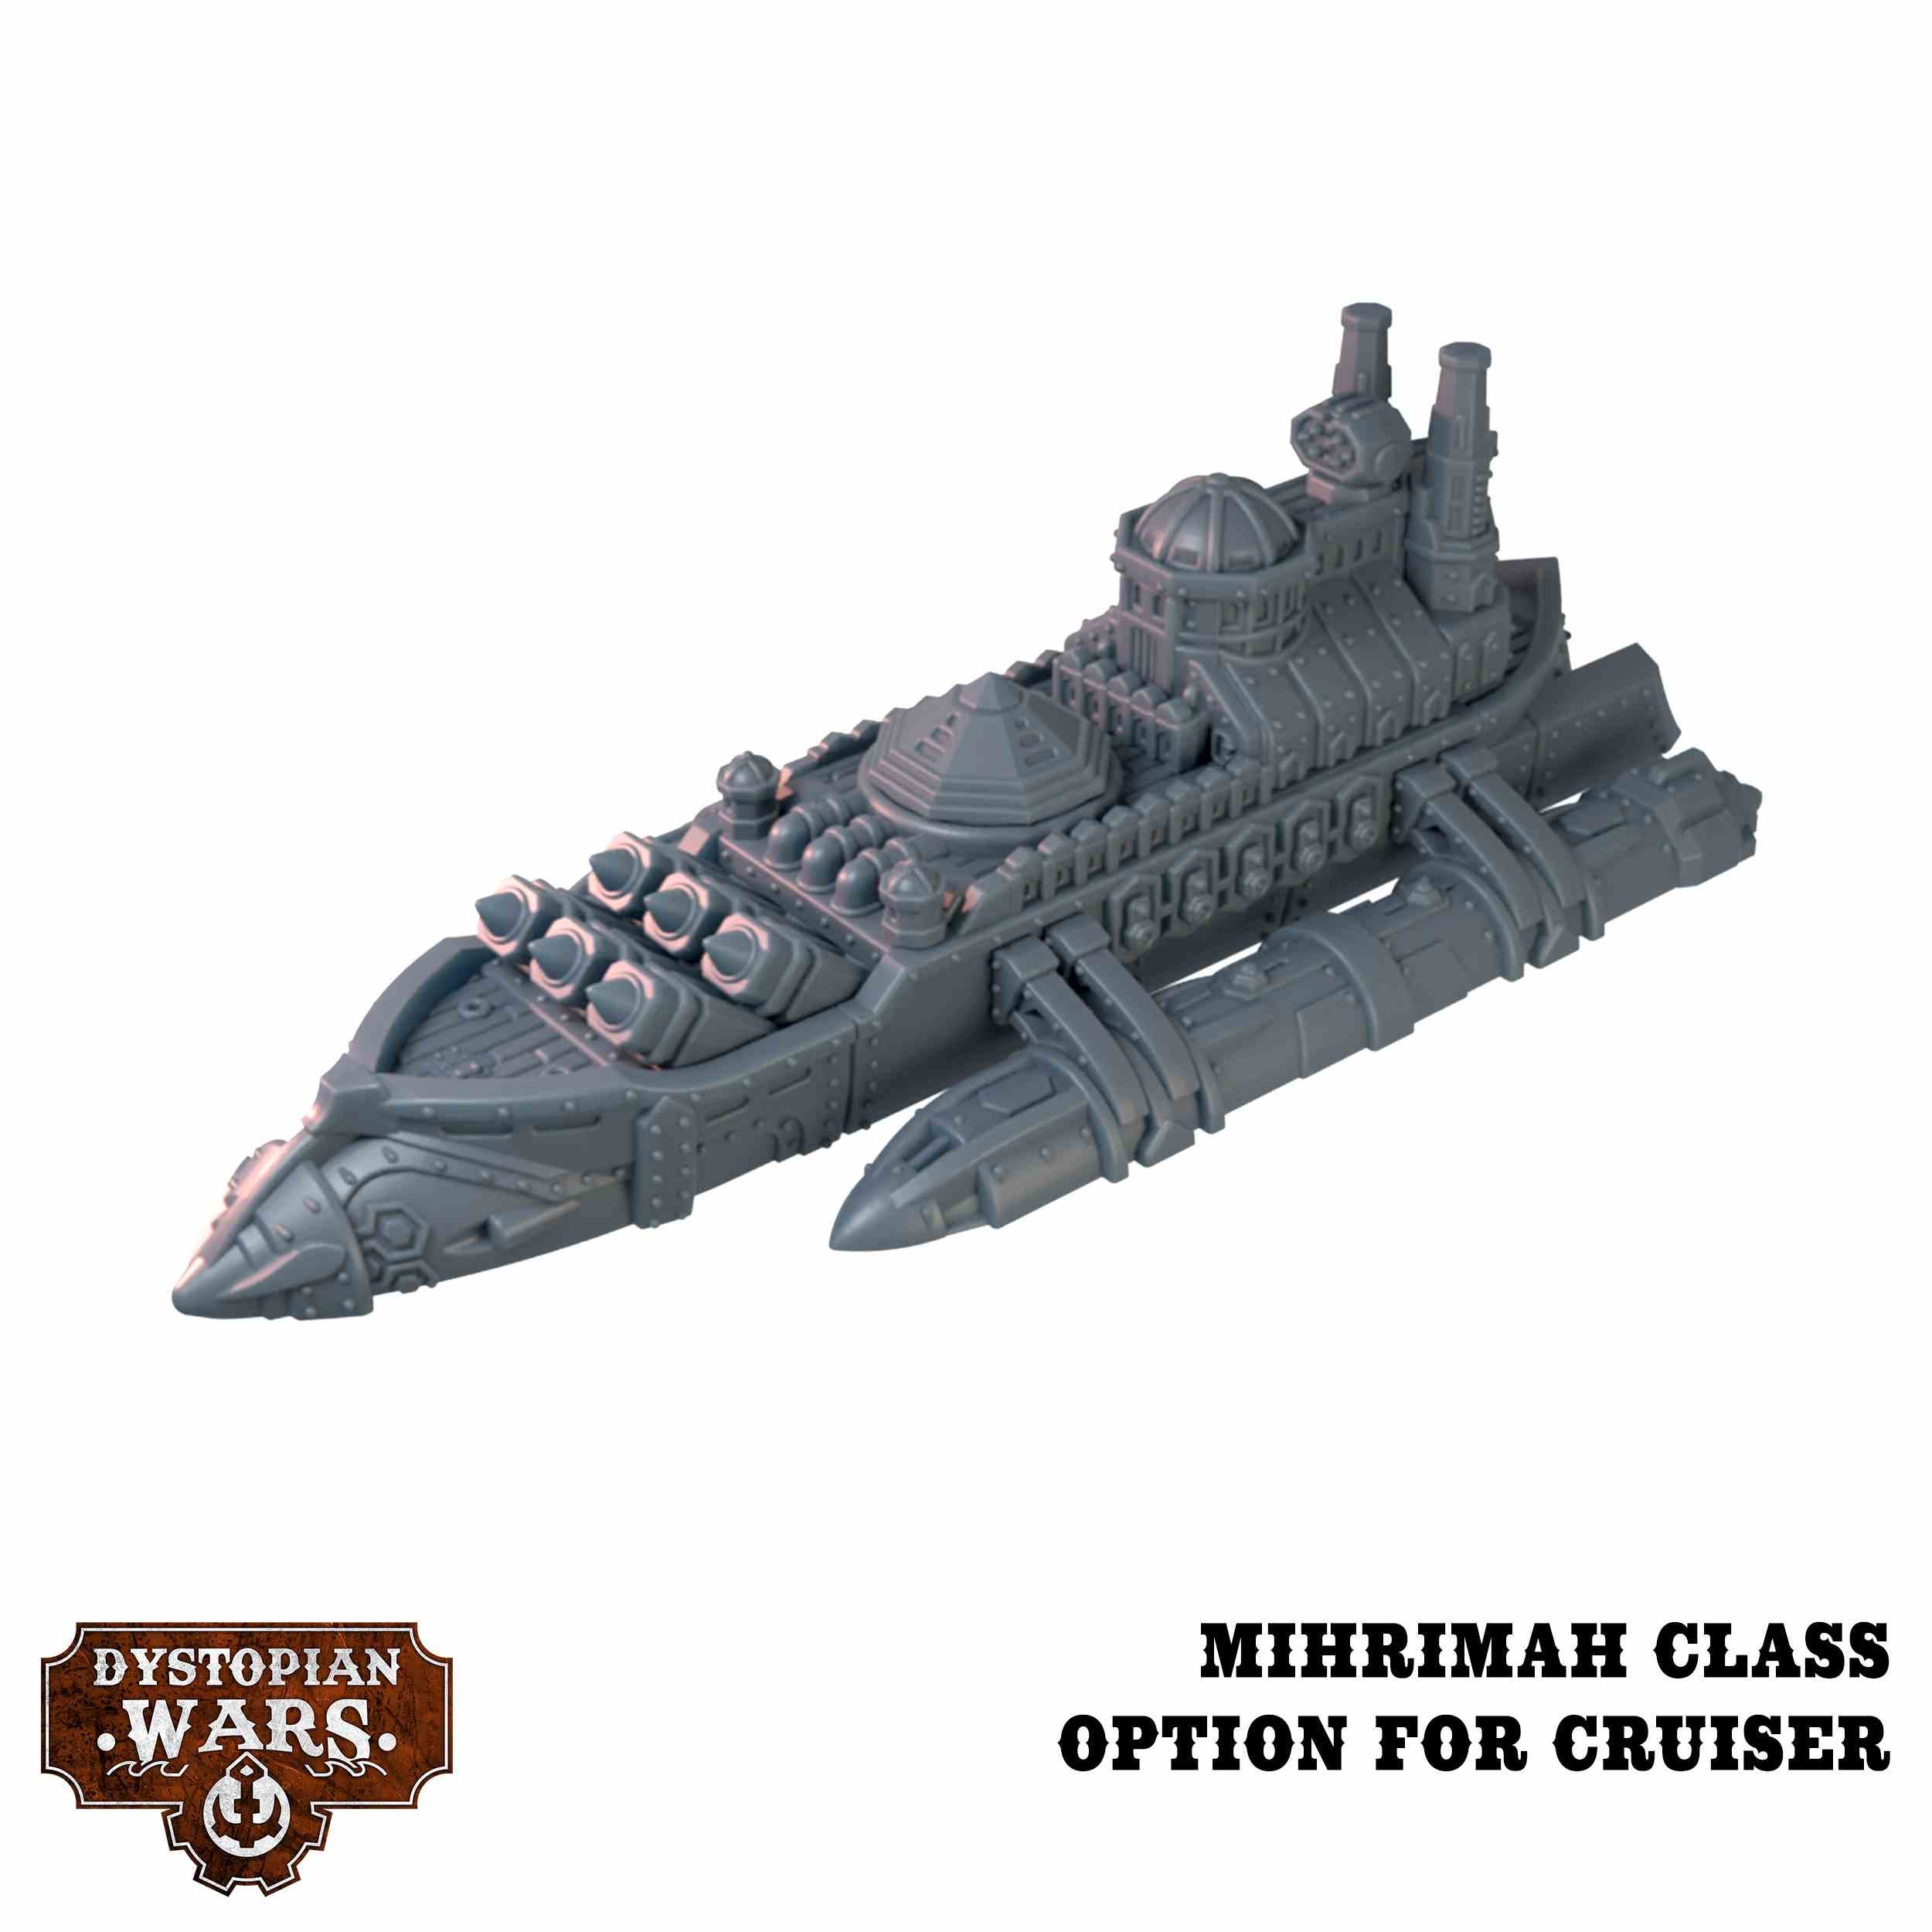 Mihrimah Class Cruiser - Dystopian Wars